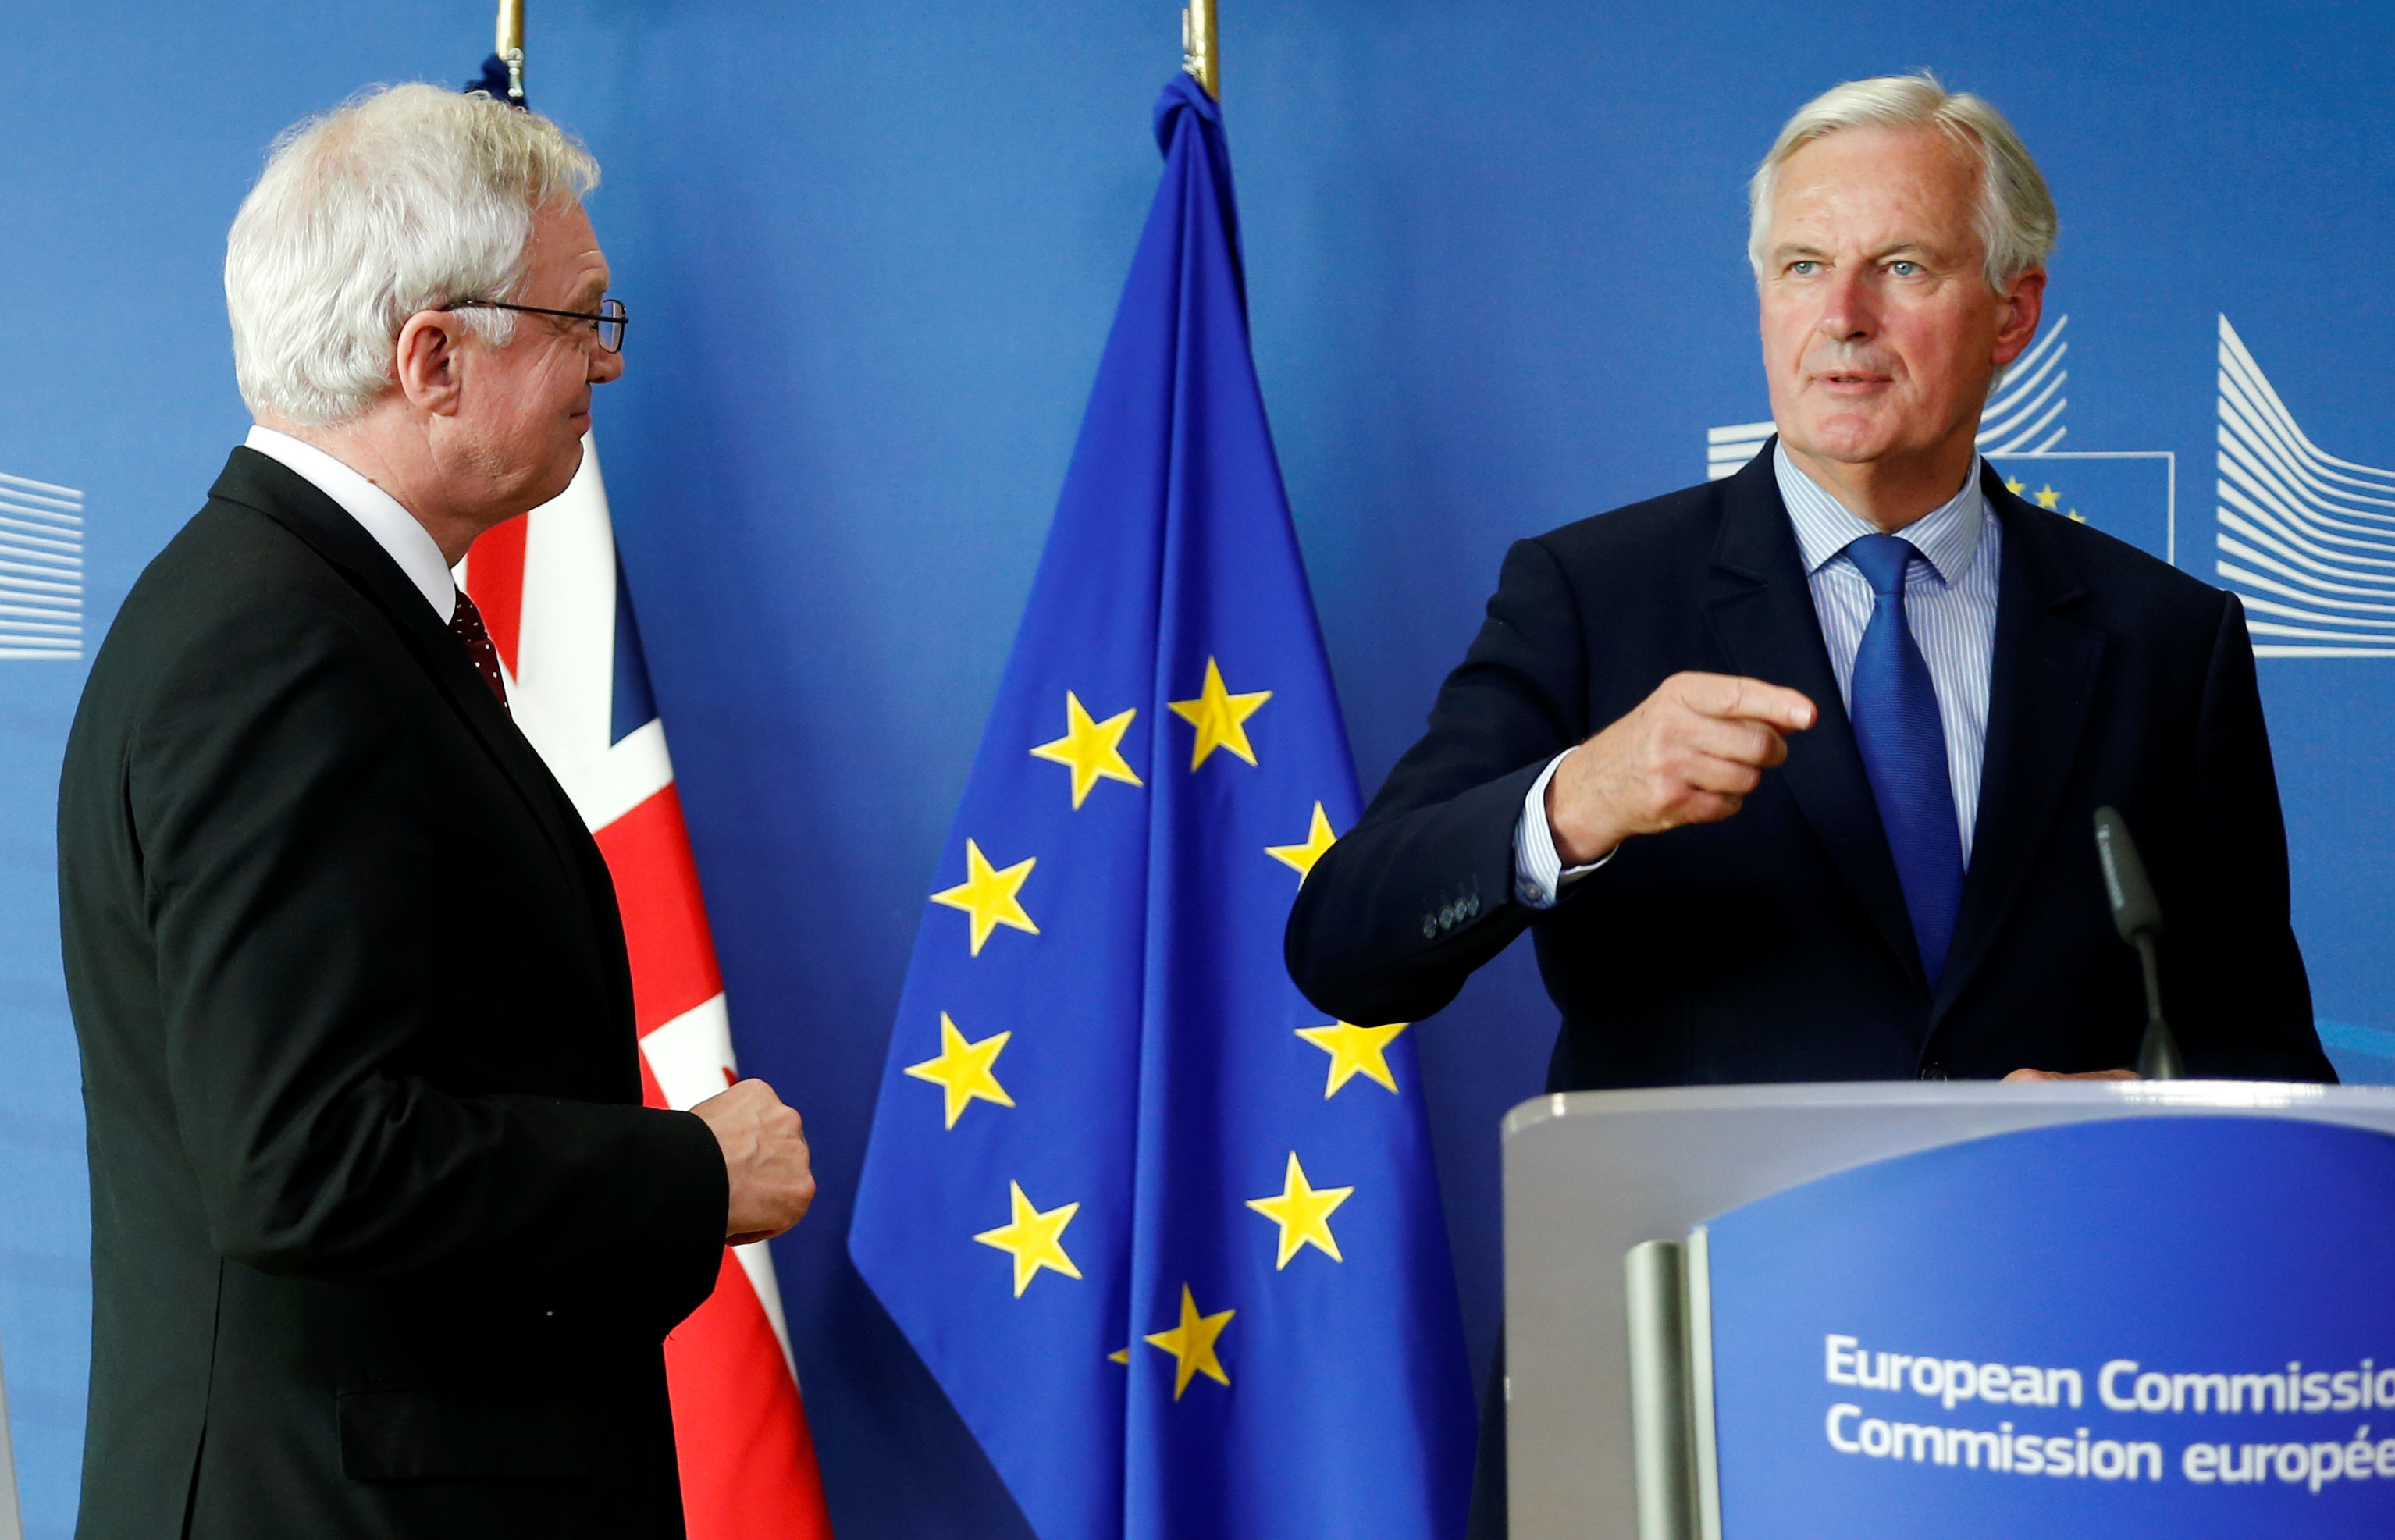 لقاء بين كبير مفاوضى الاتحاد الأوروبي فى ملف بريكست مع المفاوض البريطانى